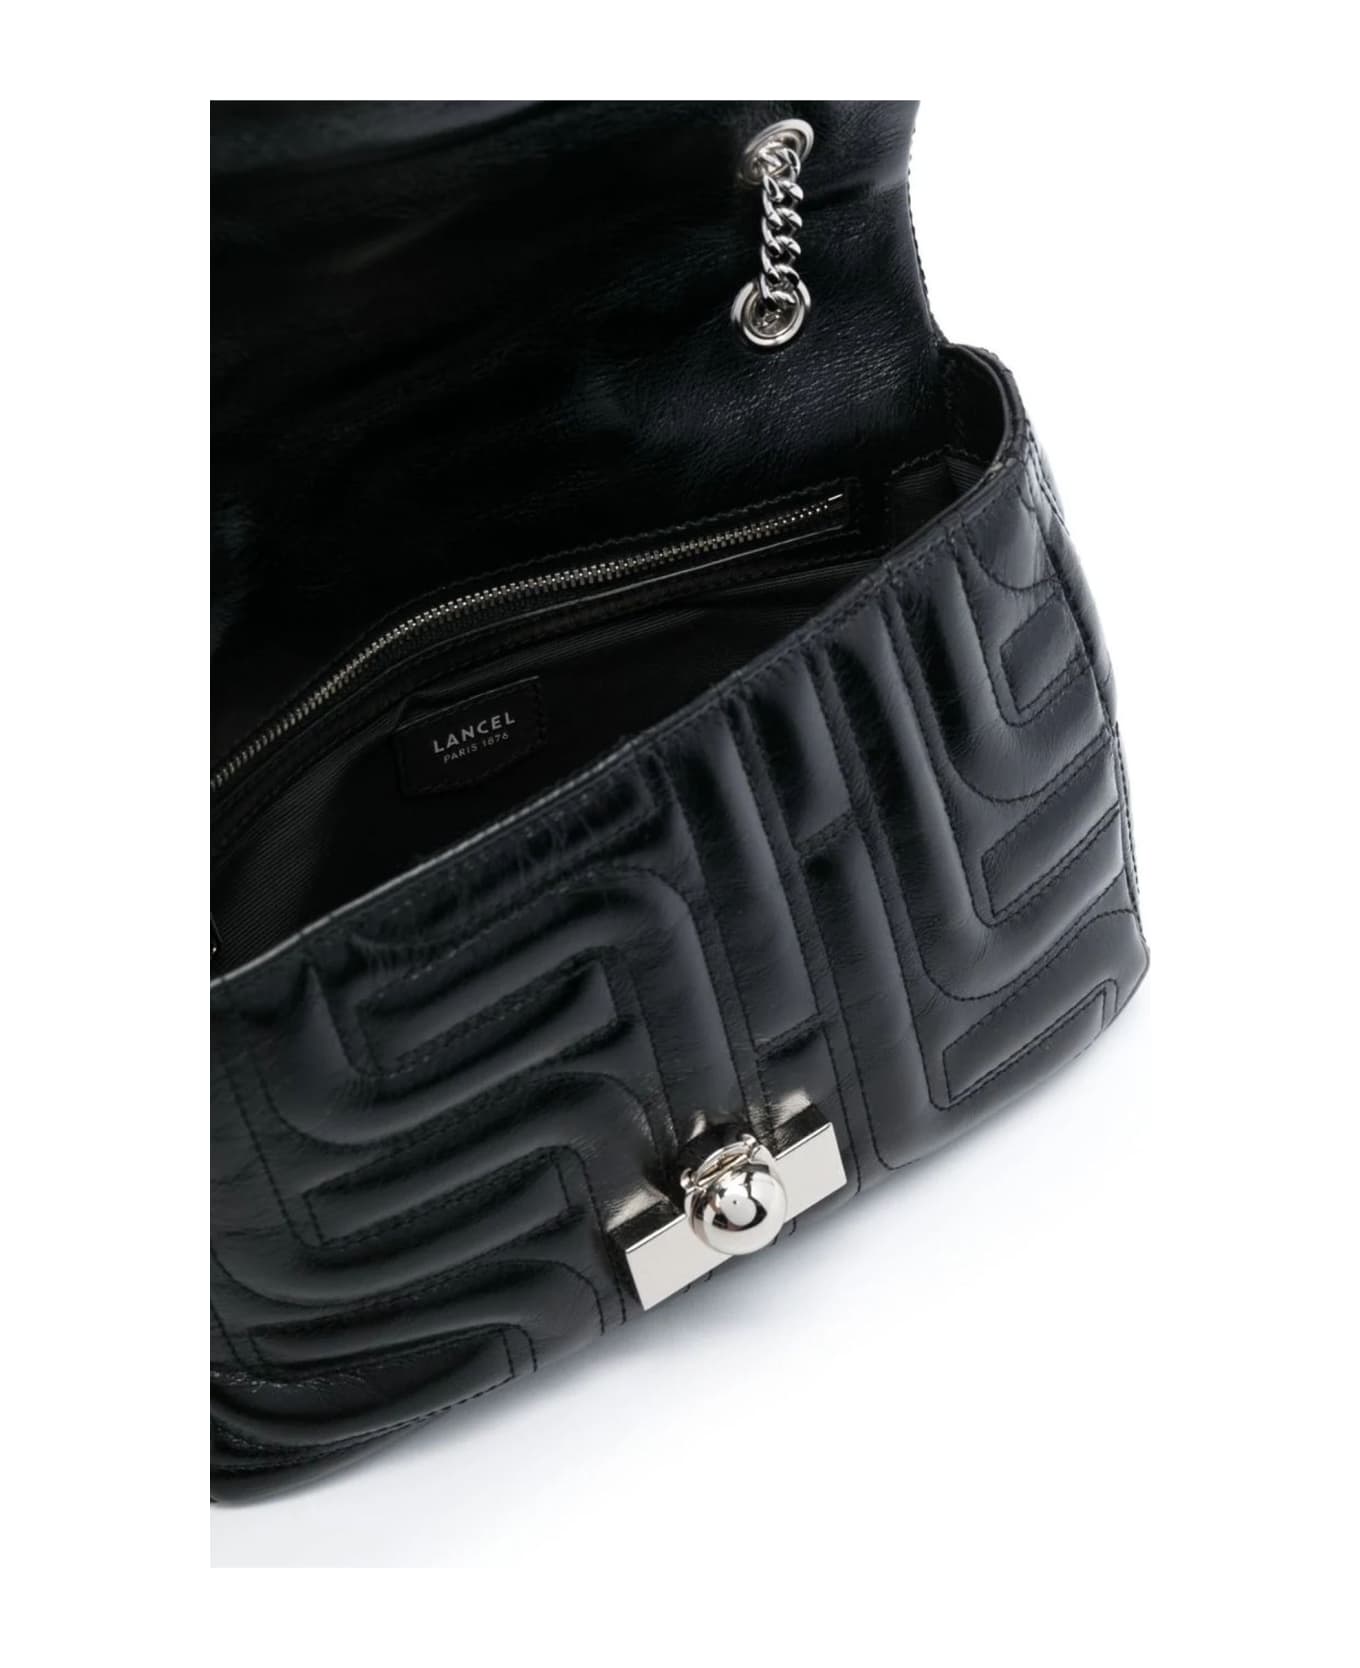 Lancel Jet Black Calf Leather Shoulder Bag - Black